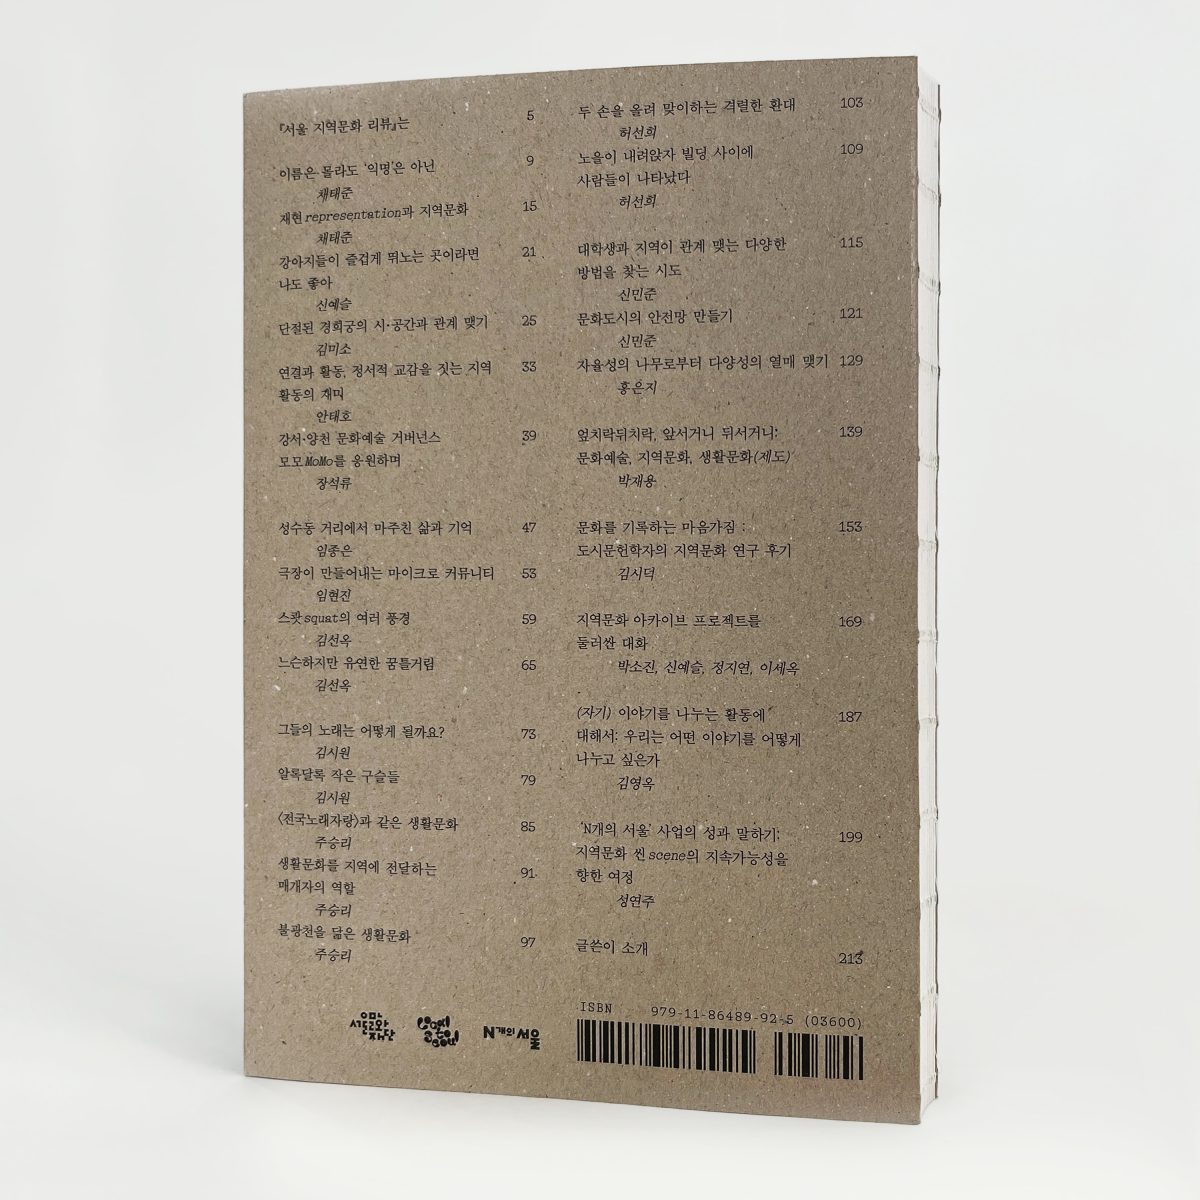 책 『서울 지역문화 리뷰』의 표지 뒷면으로, 책의 목차가 인쇄되어 있다.